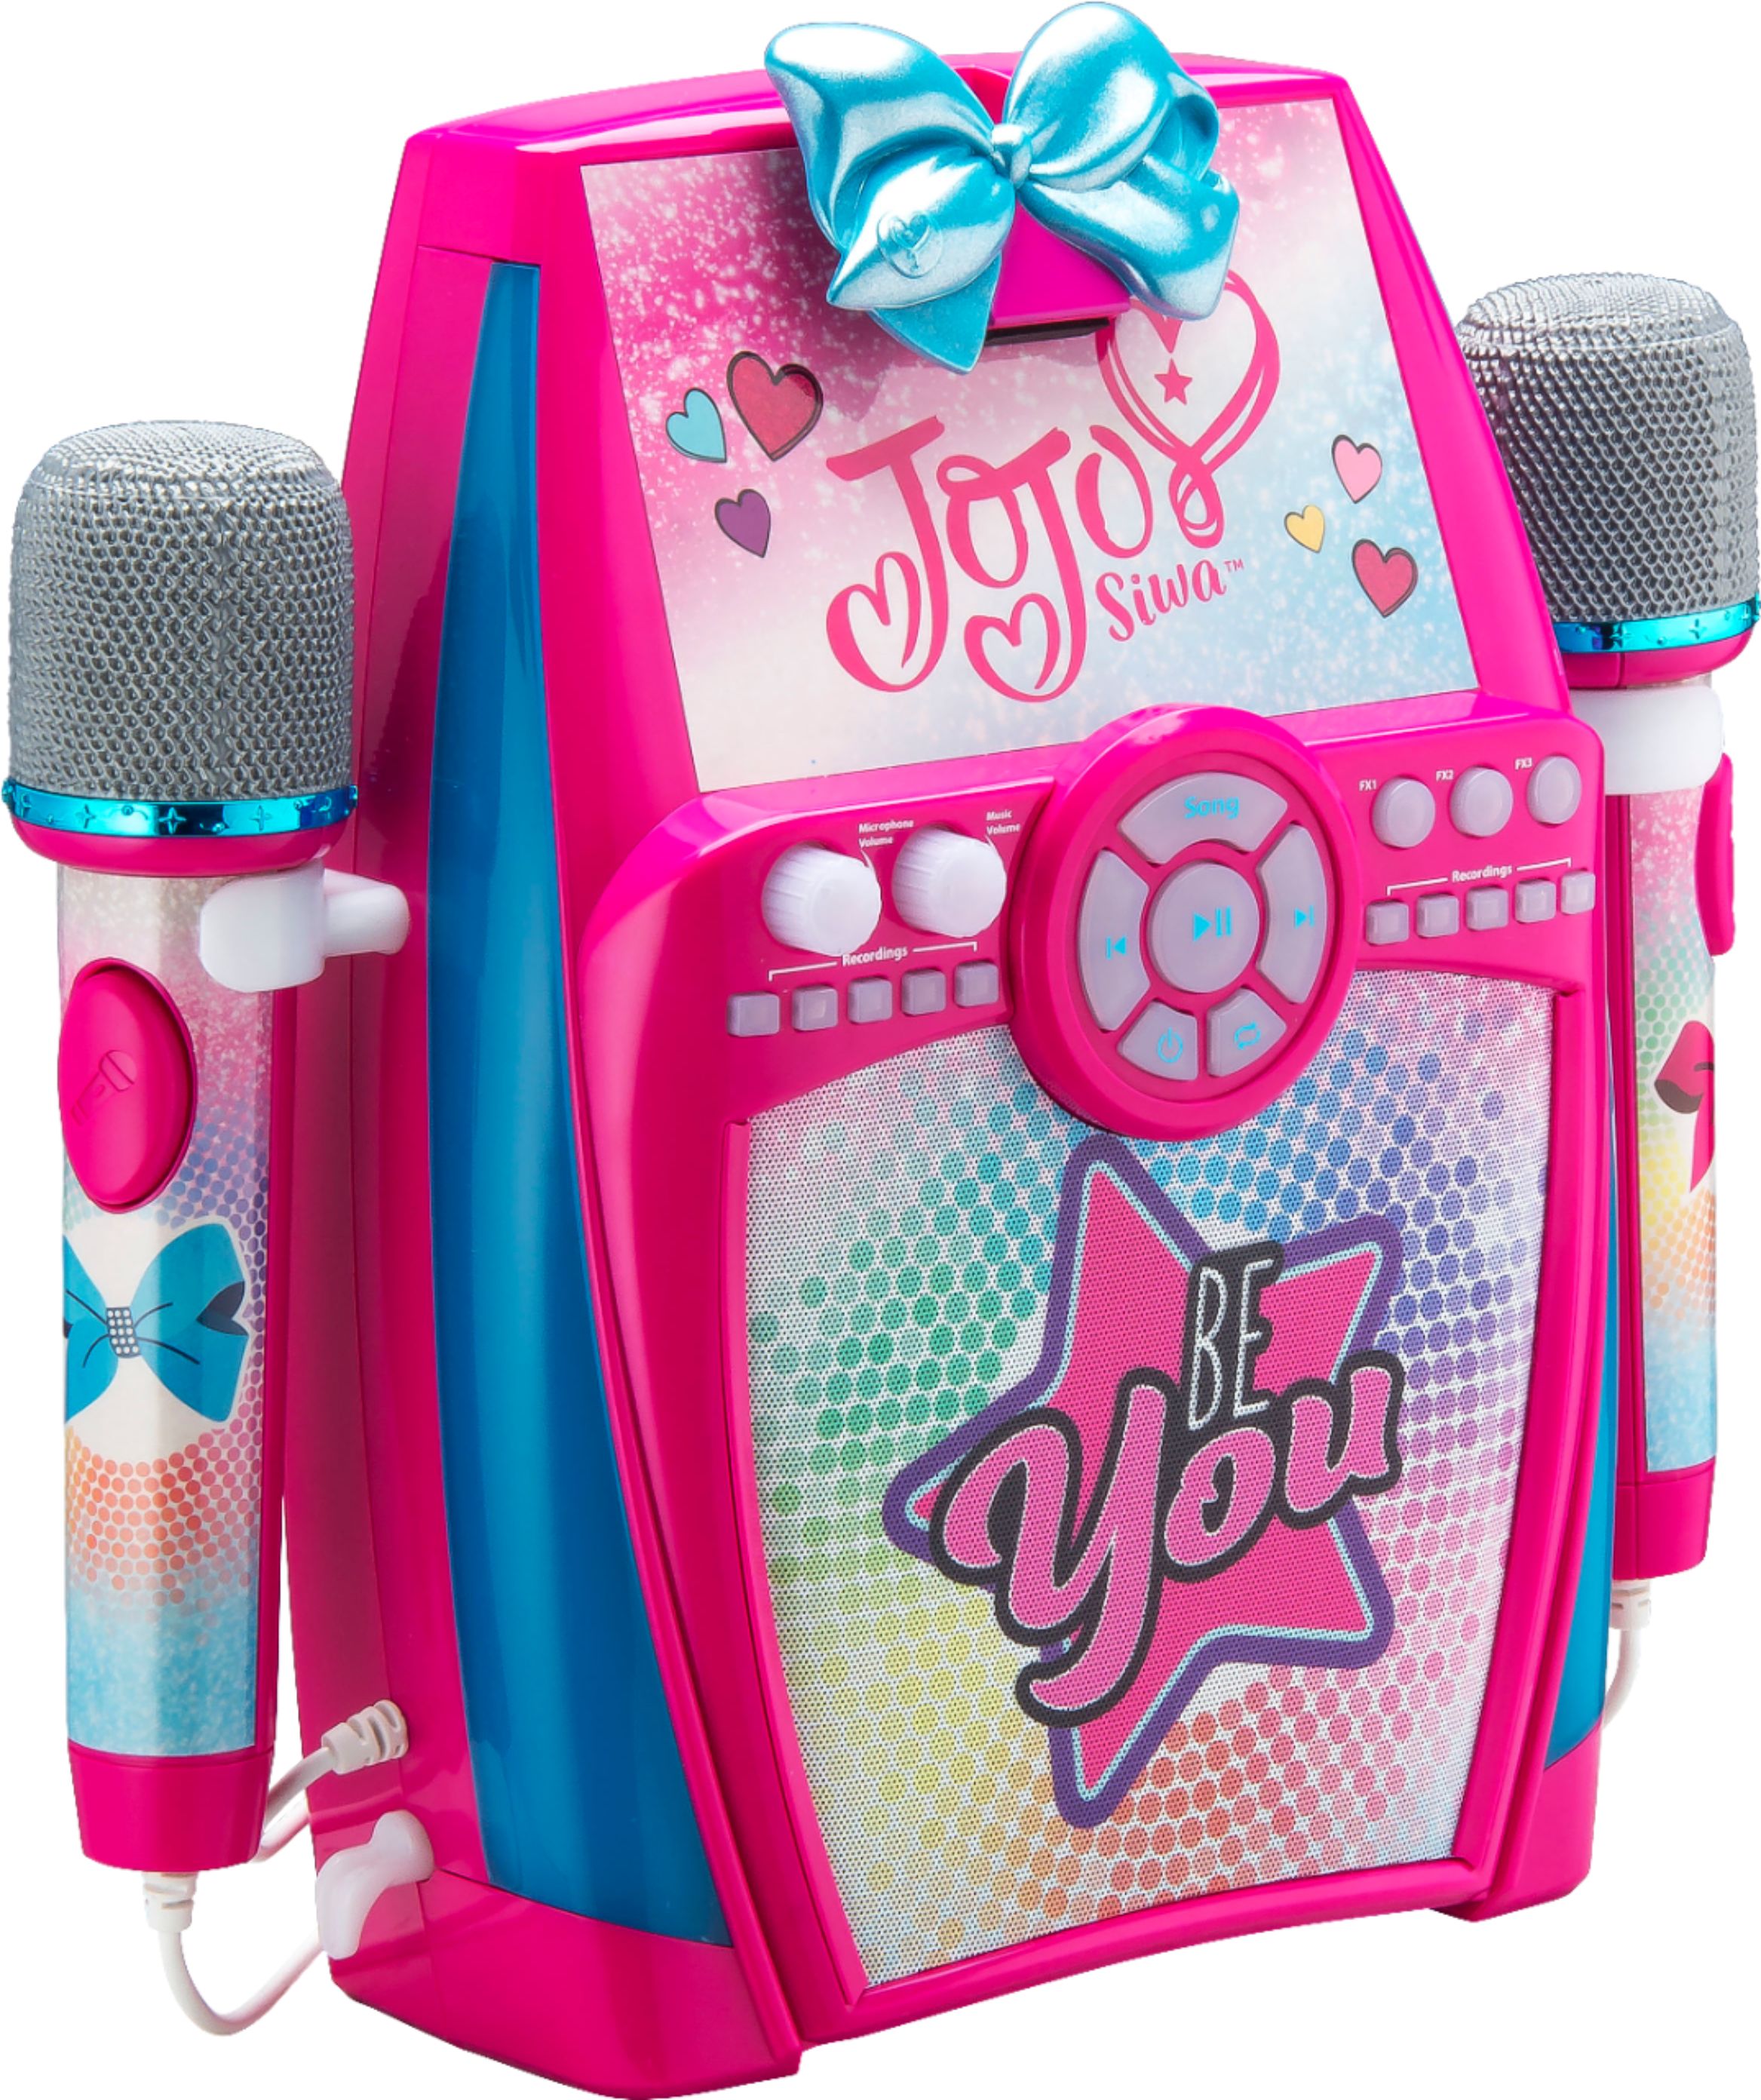 Best Buy Ekids Jojo Siwa Sing Along Boombox Karaoke System Pink Jj 615 Emv7s